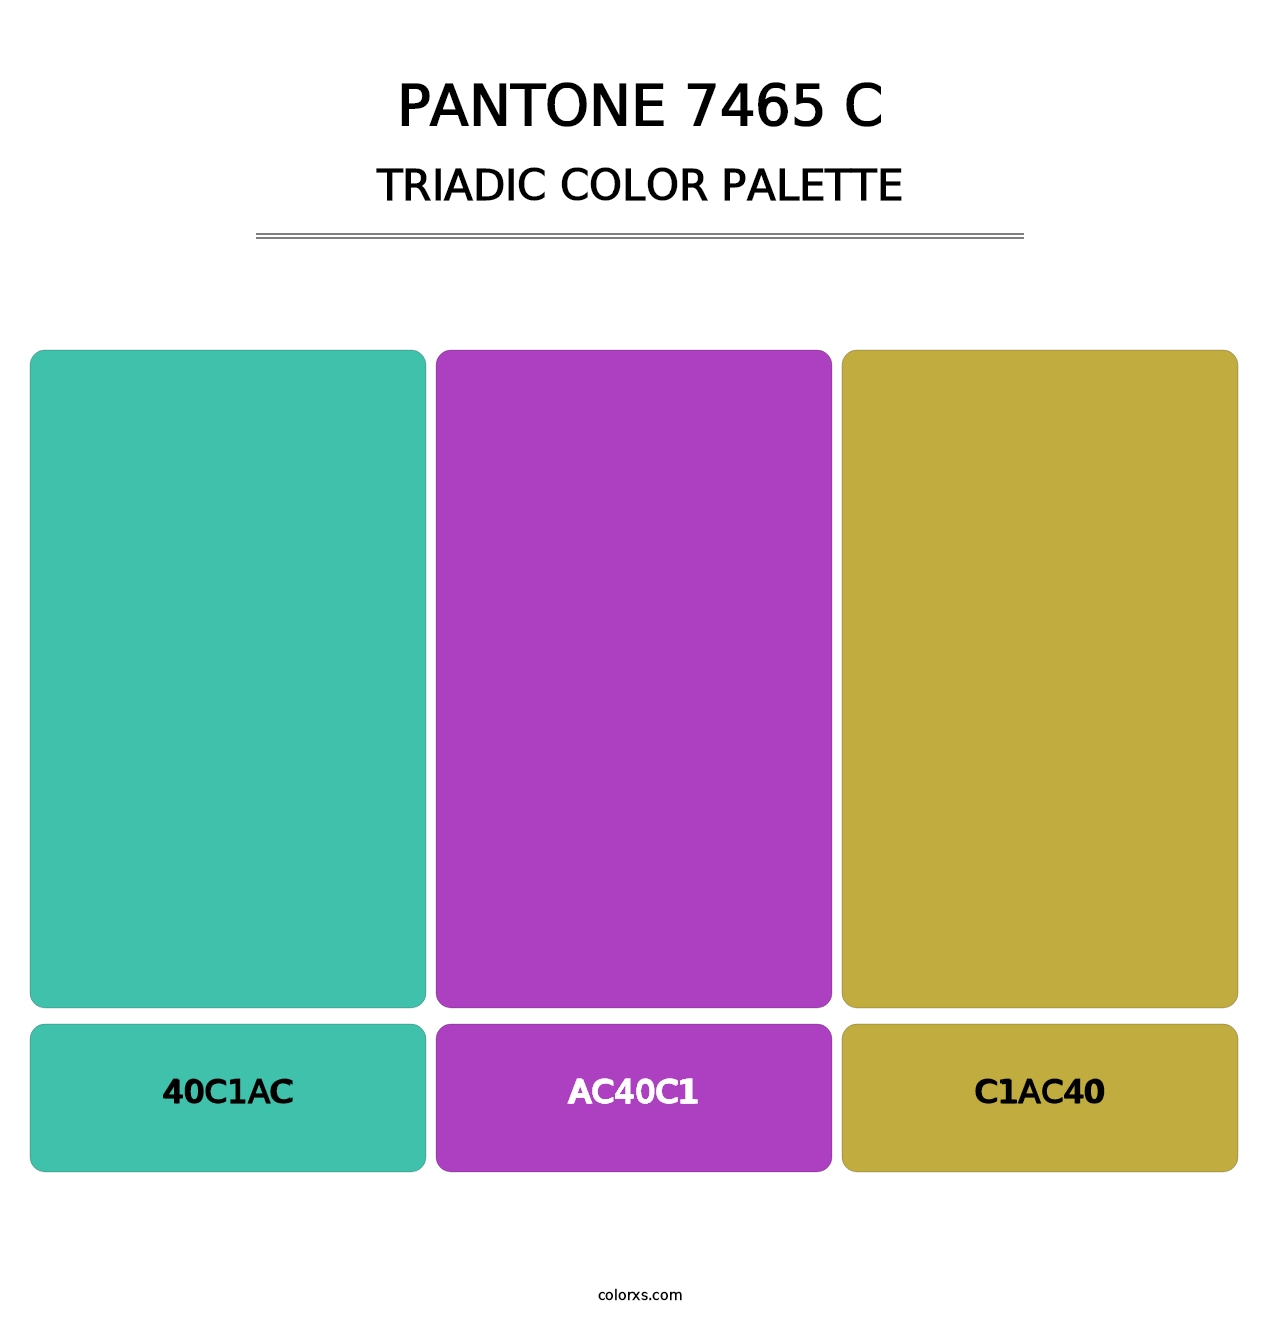 PANTONE 7465 C - Triadic Color Palette